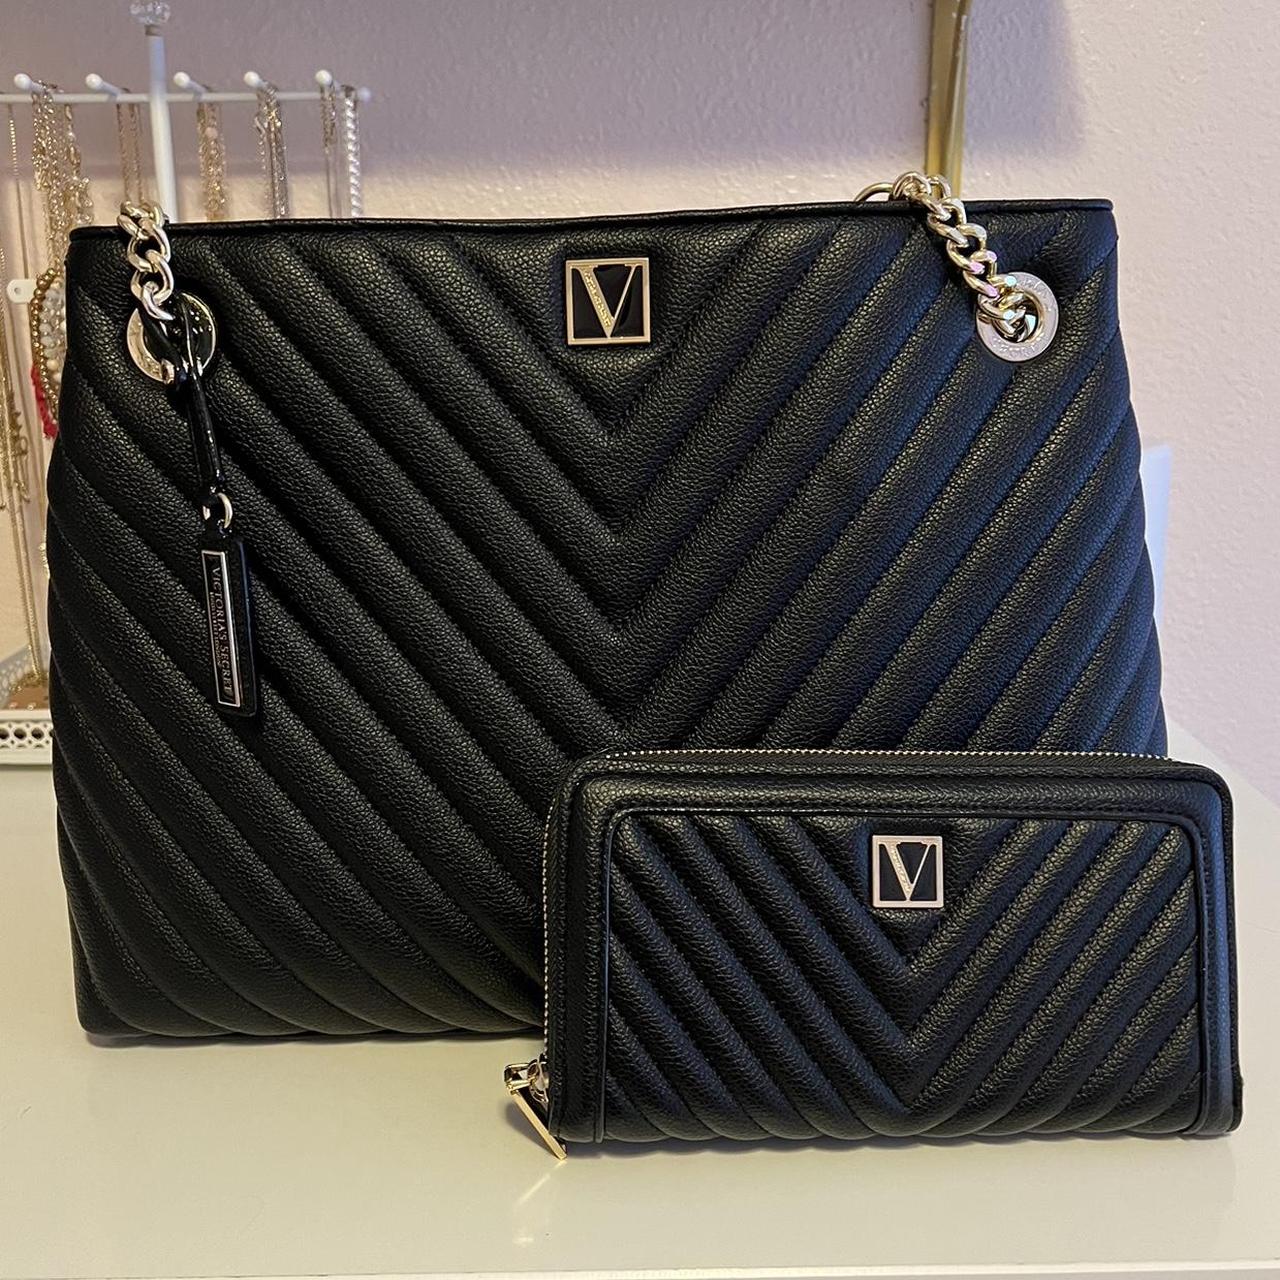 Victoria secret black tote bag & matching wallet - Depop